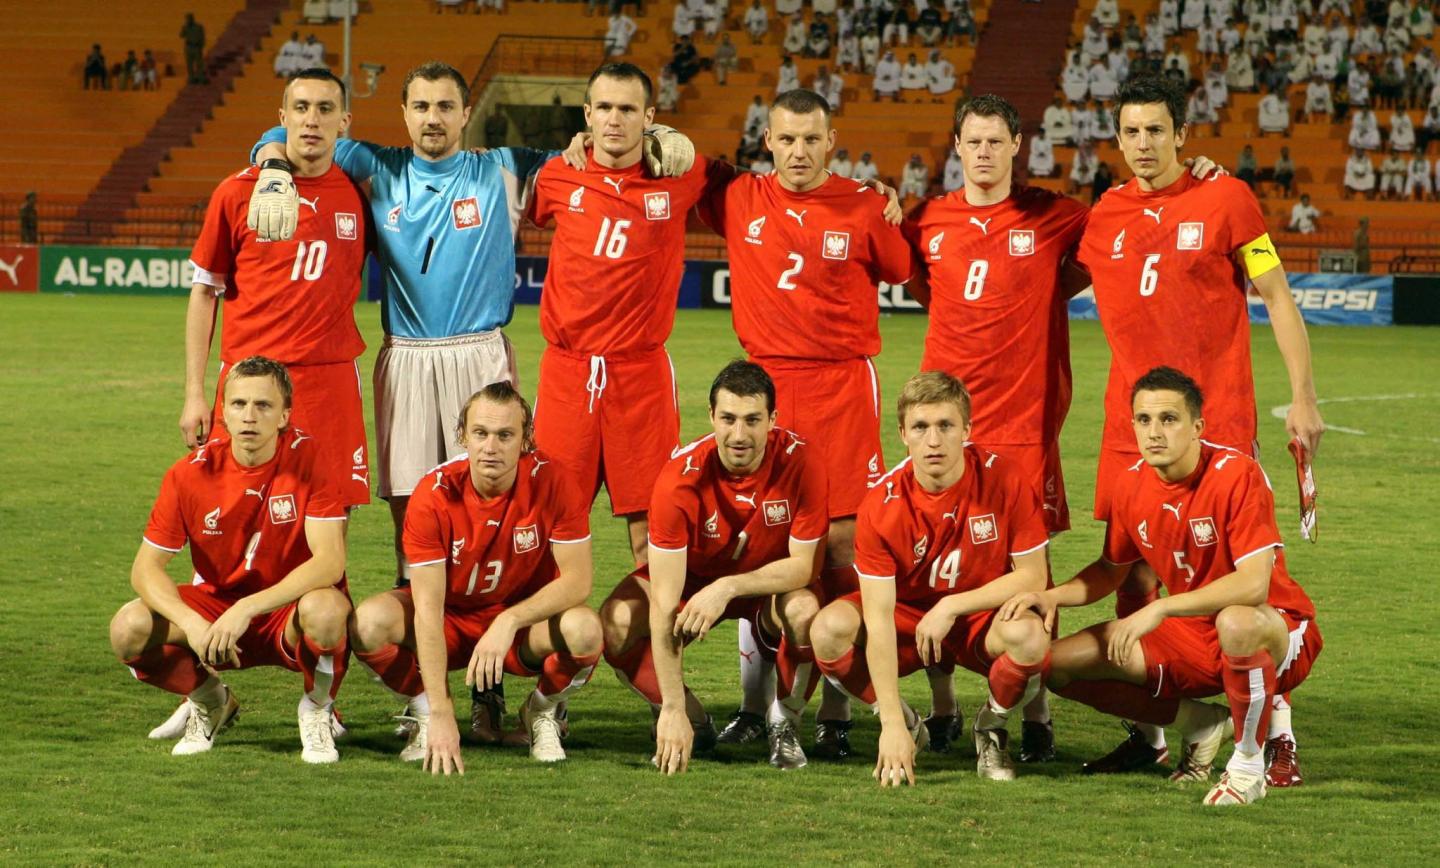 Grupowe zdjęcie reprezentacji Polski przed towarzyskim meczem z Arabią Saudyjską w Rijadzie w 2006.